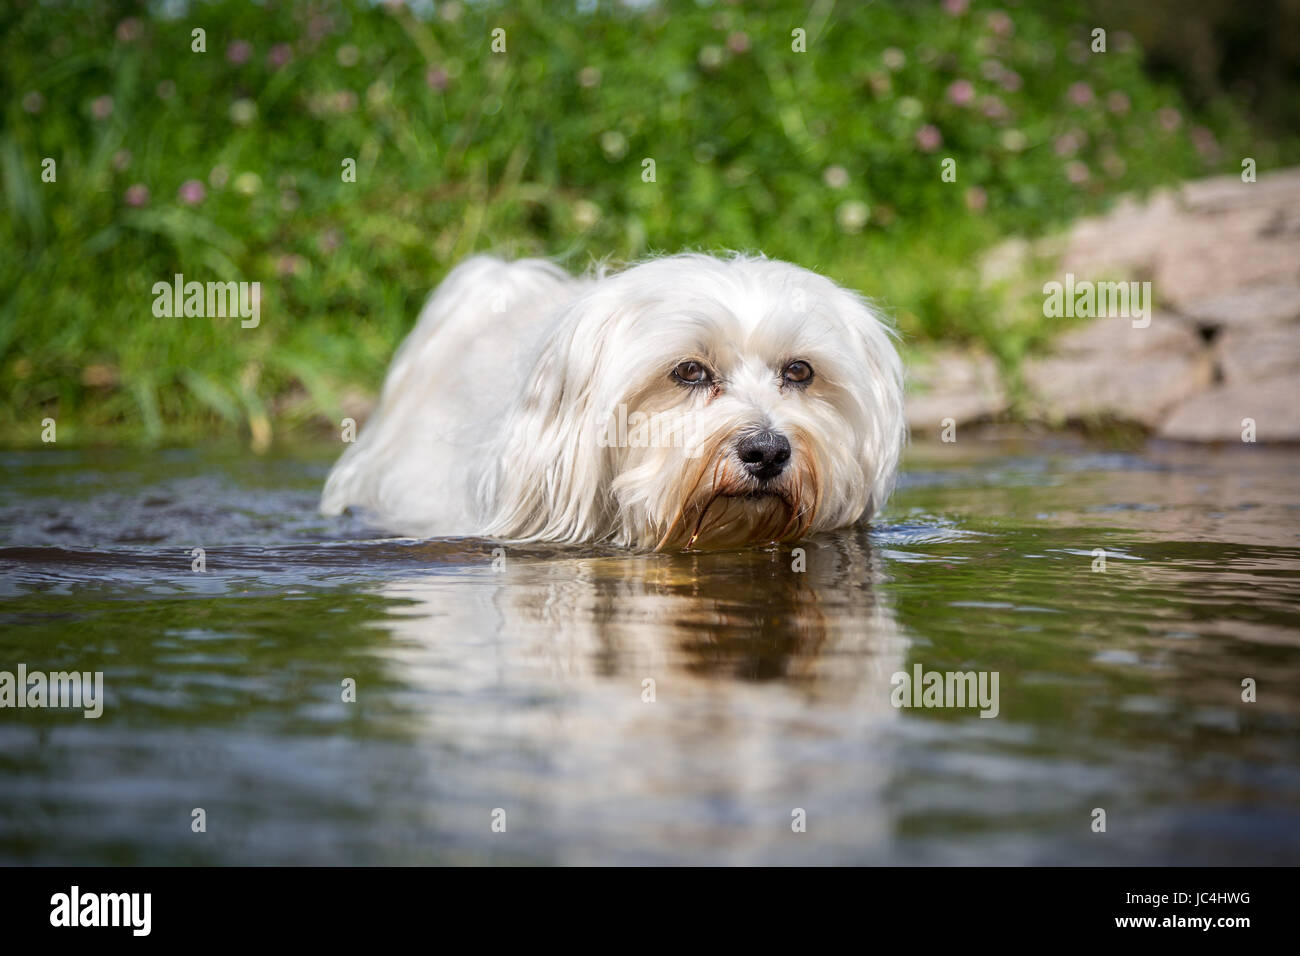 Kleiner Weißer Hund geht durchs Wasser direkt auf den Fotografen zu. Stock Photo